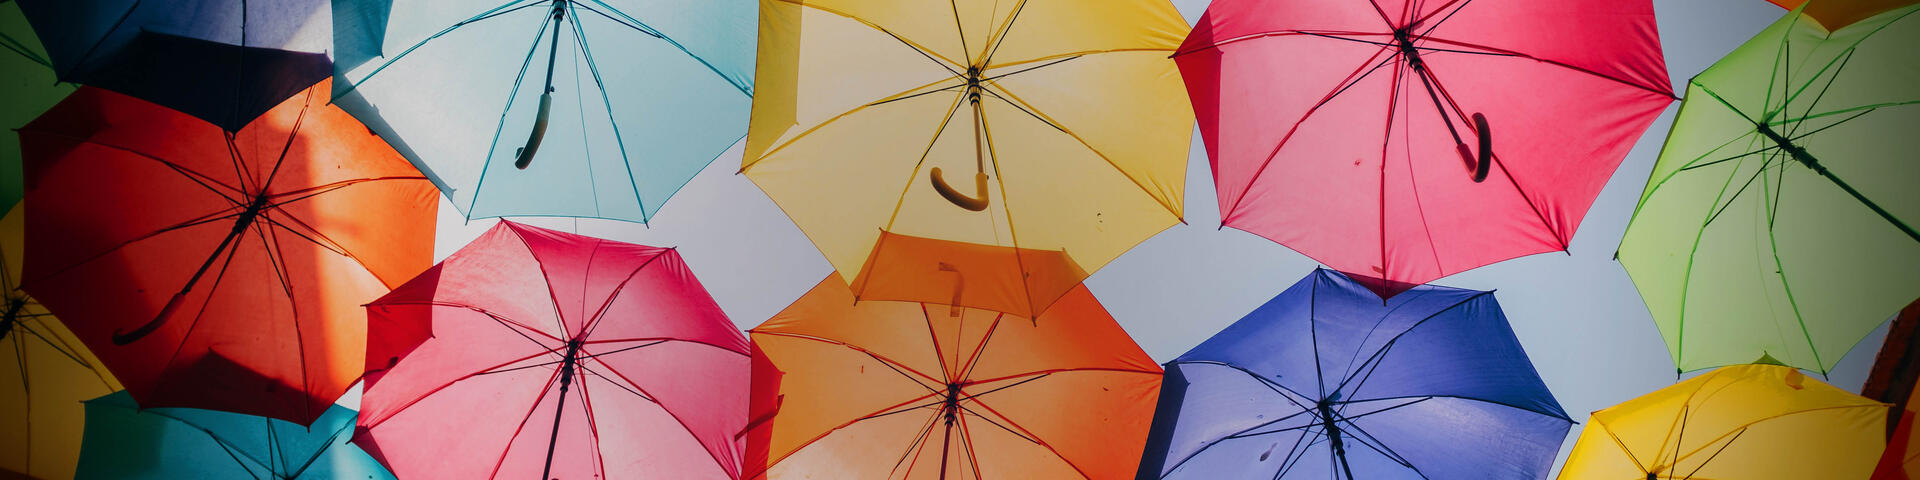 Paraplyer i olika färger - Försäkringar för dig, ditt hem och din familj